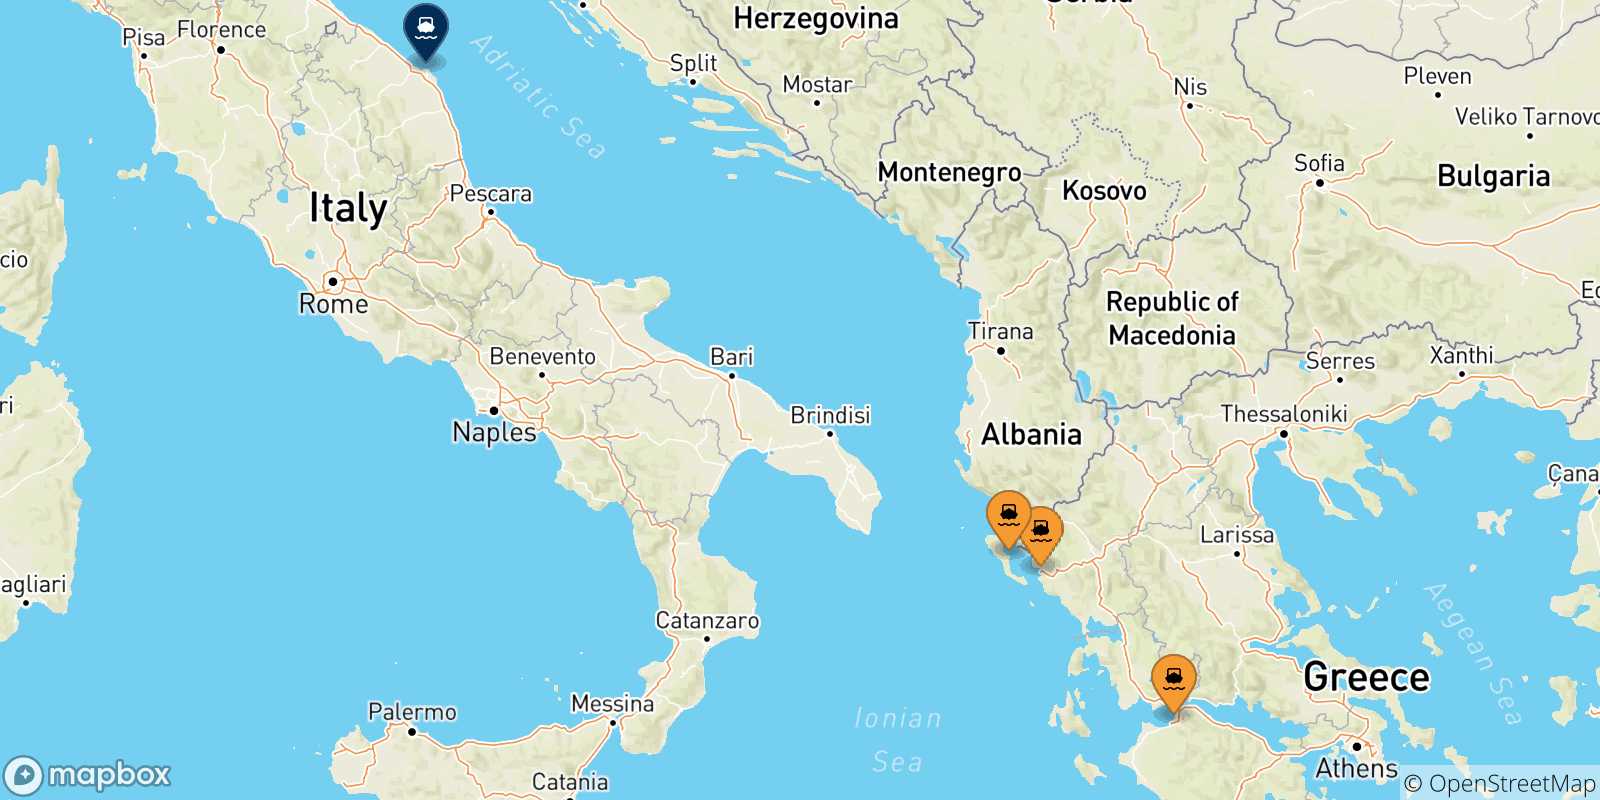 Mappa delle possibili rotte tra la Grecia e Ancona